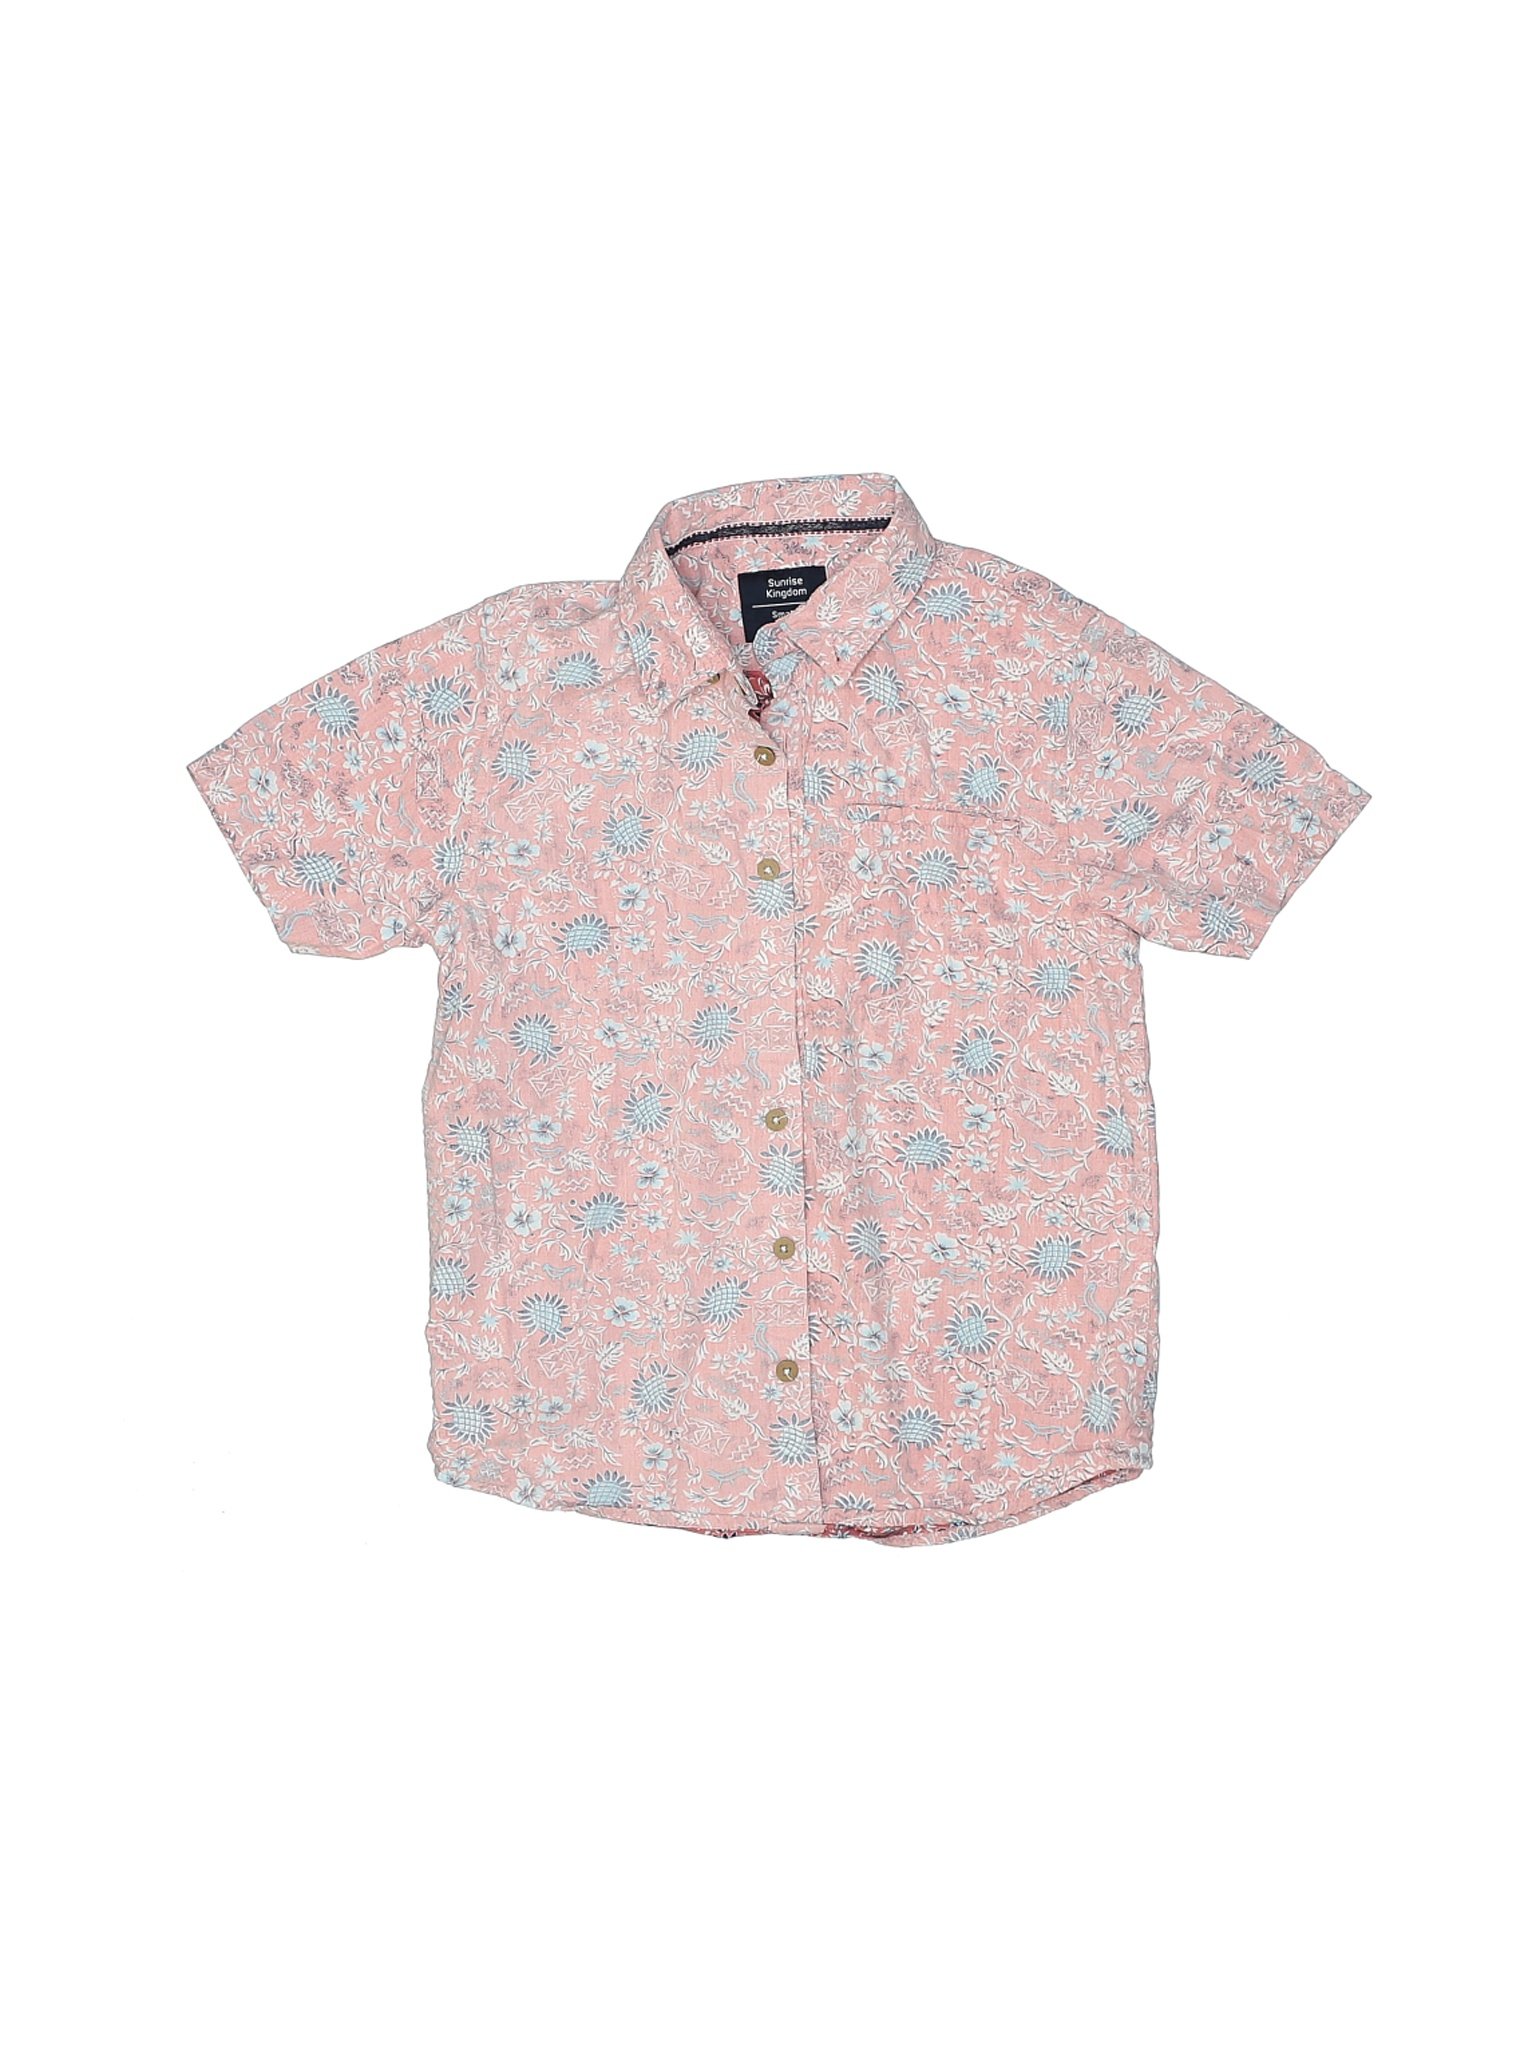 Assorted Brands Boys Pink Short Sleeve Button-Down Shirt 8 | eBay